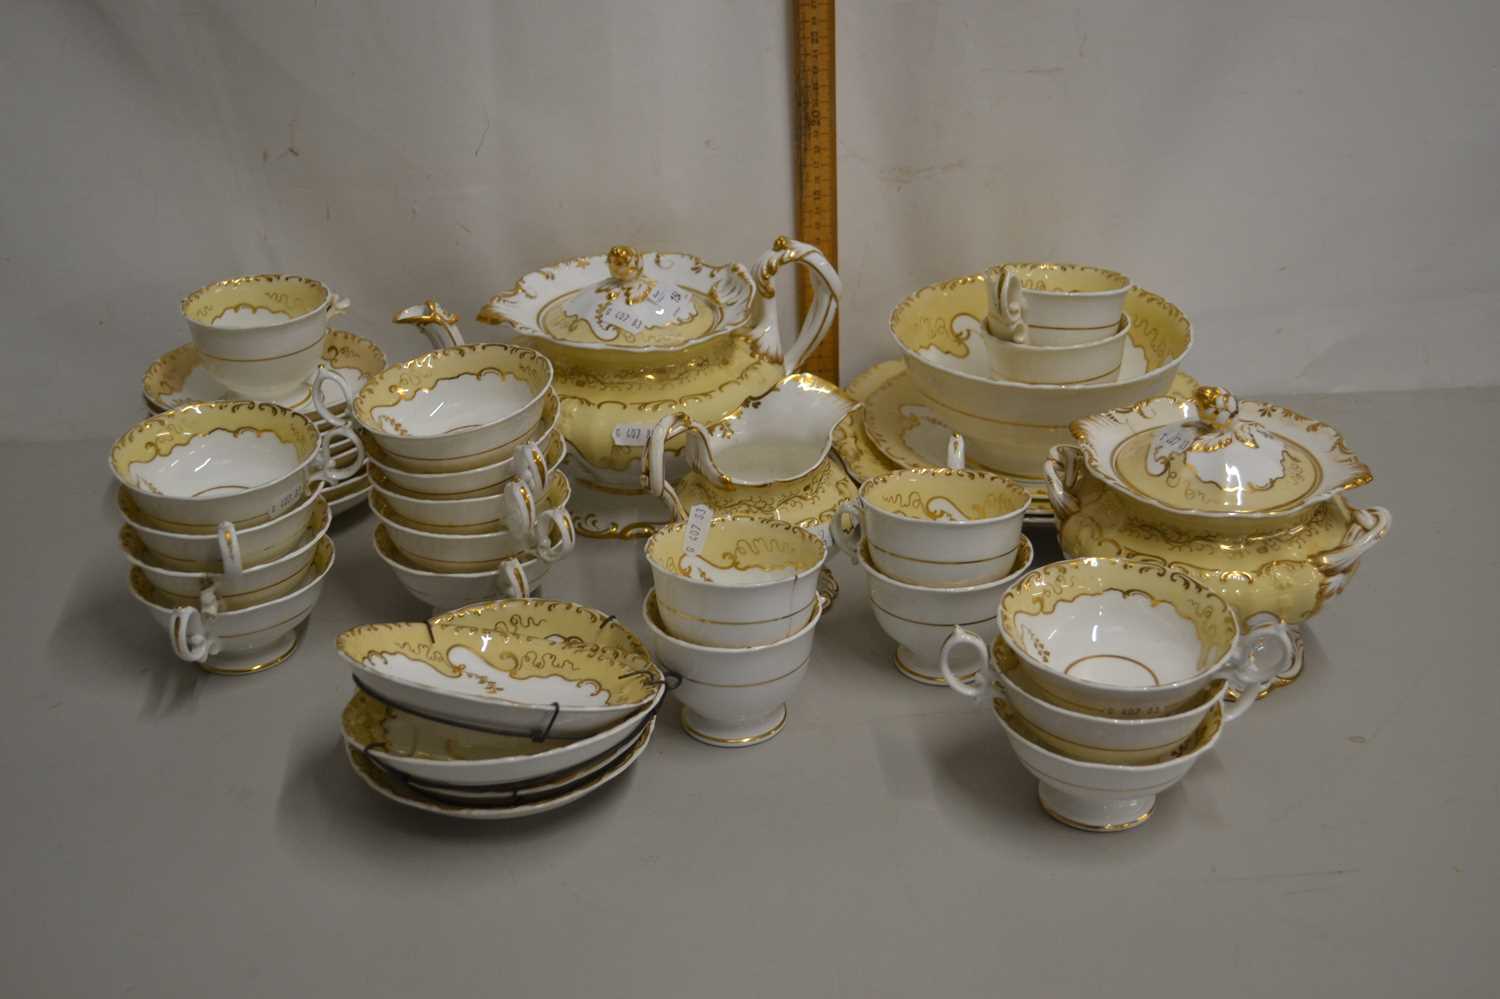 Victorian gilt patterned tea set, pattern number 5372